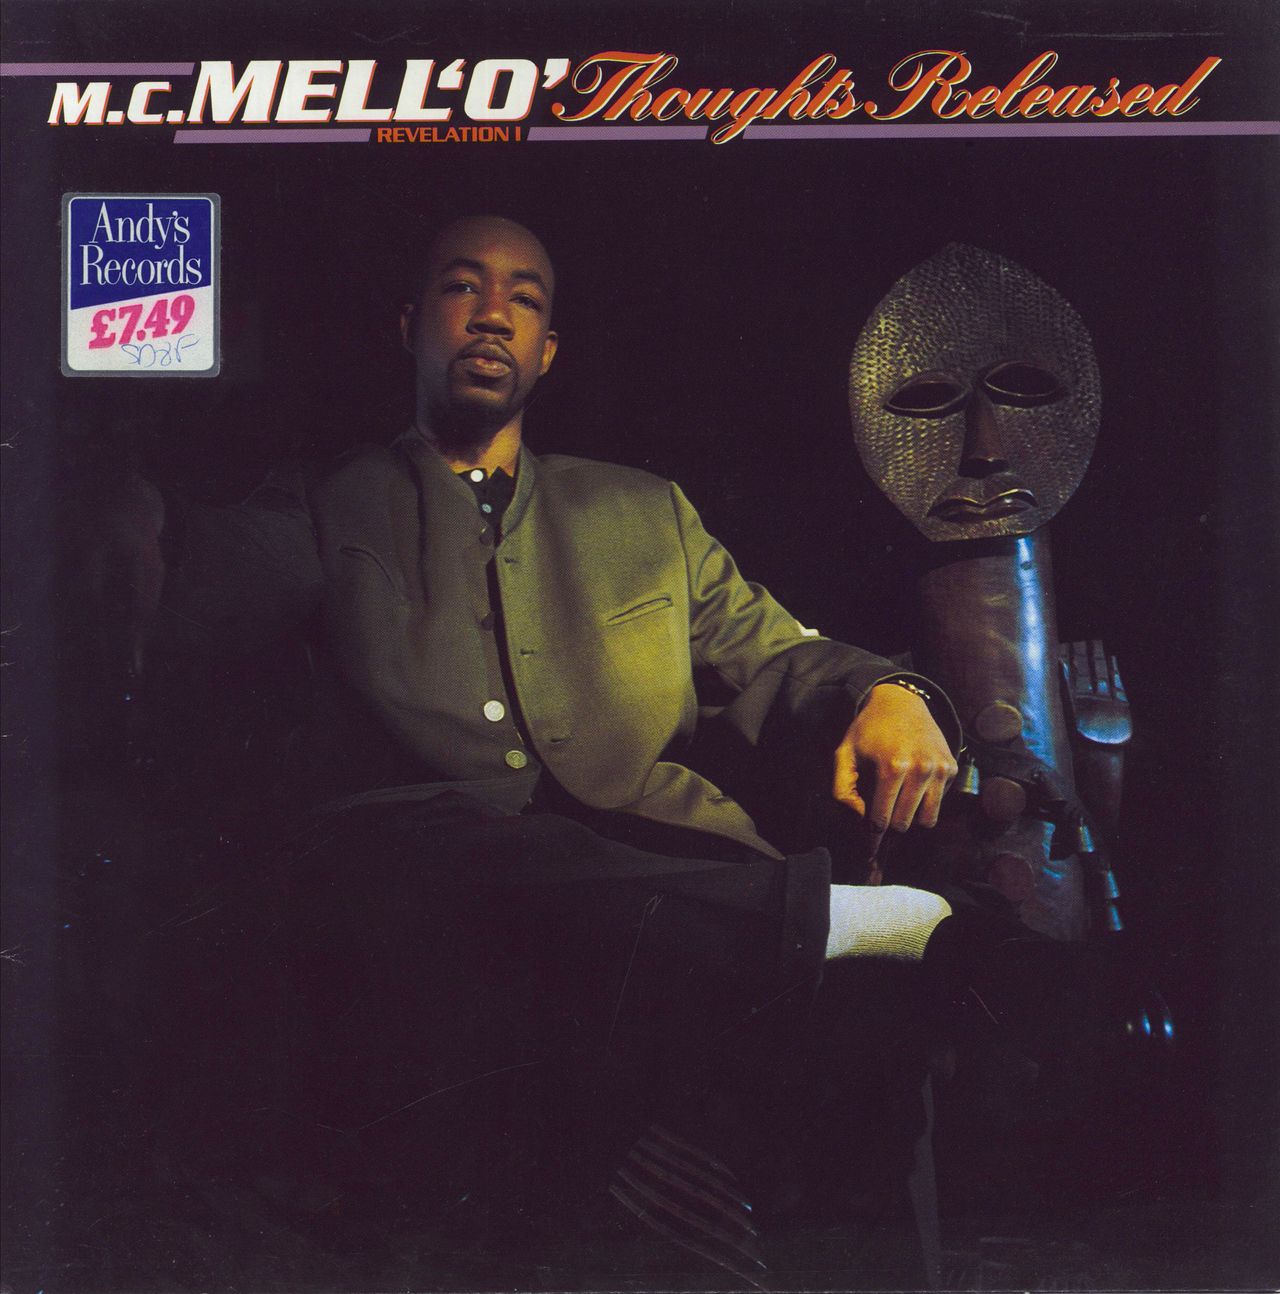 MC Mell'O' Thoughts Released (Revelation I) UK Vinyl LP